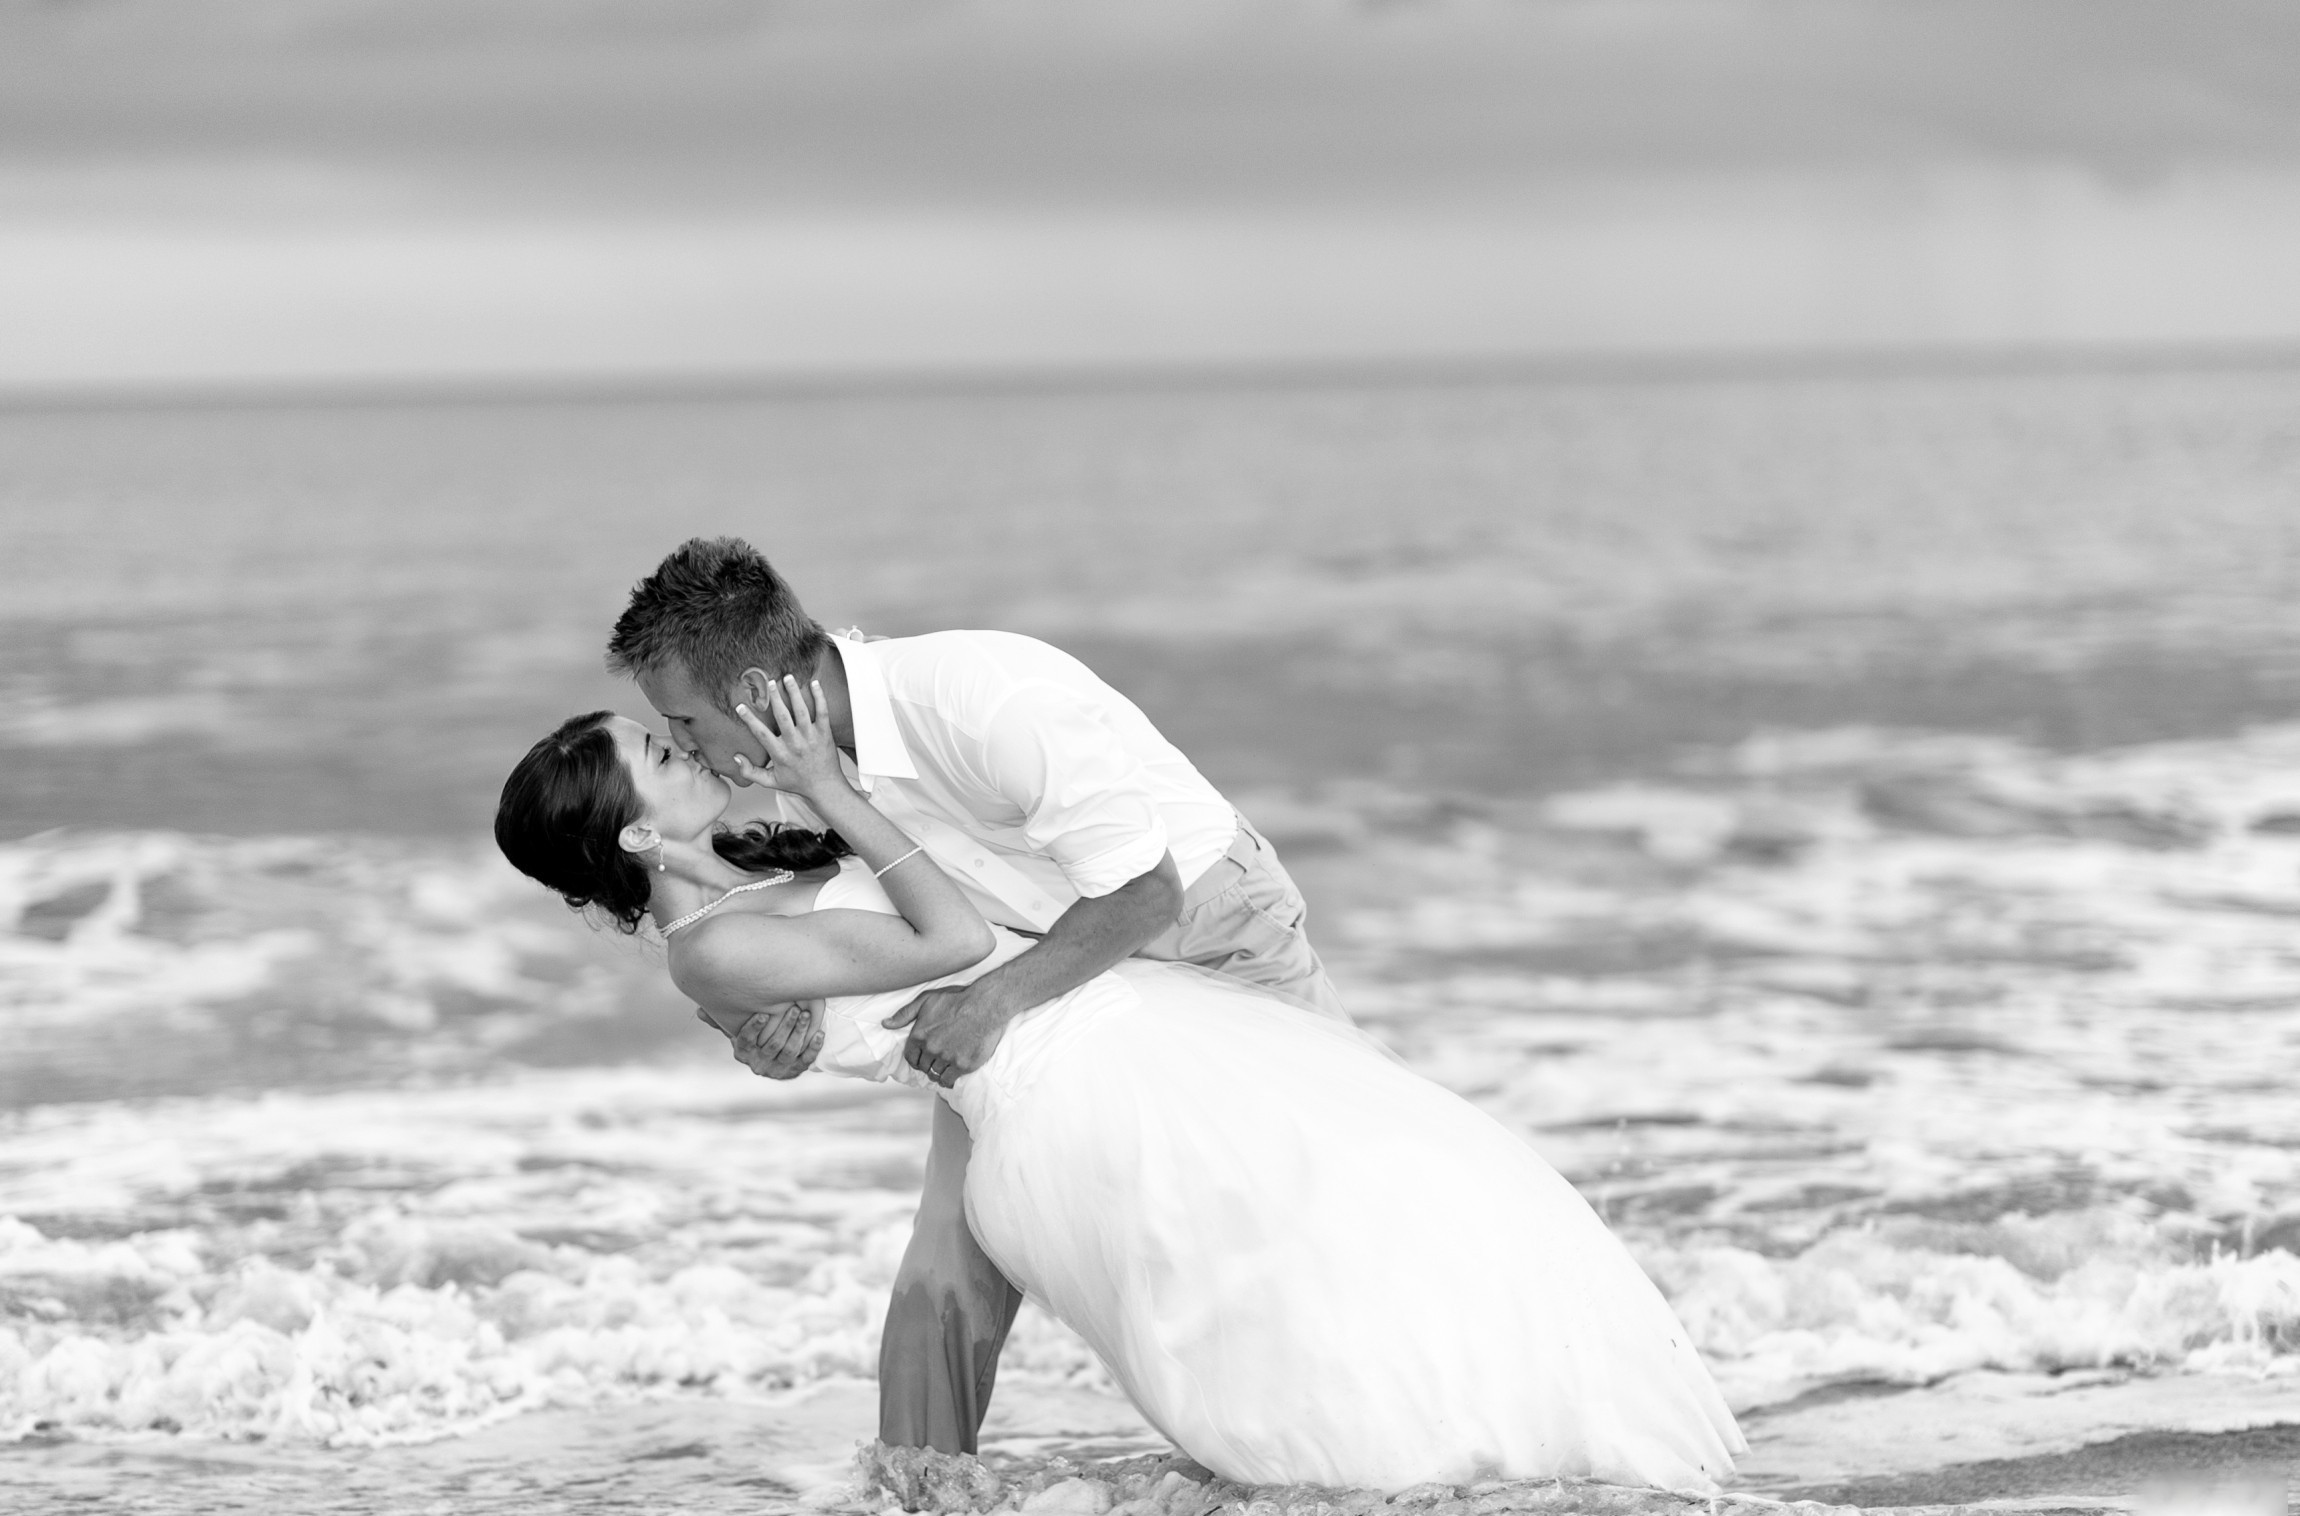 Влюбленные, свадебный букет, поцелуй, море, пляж бесплатно